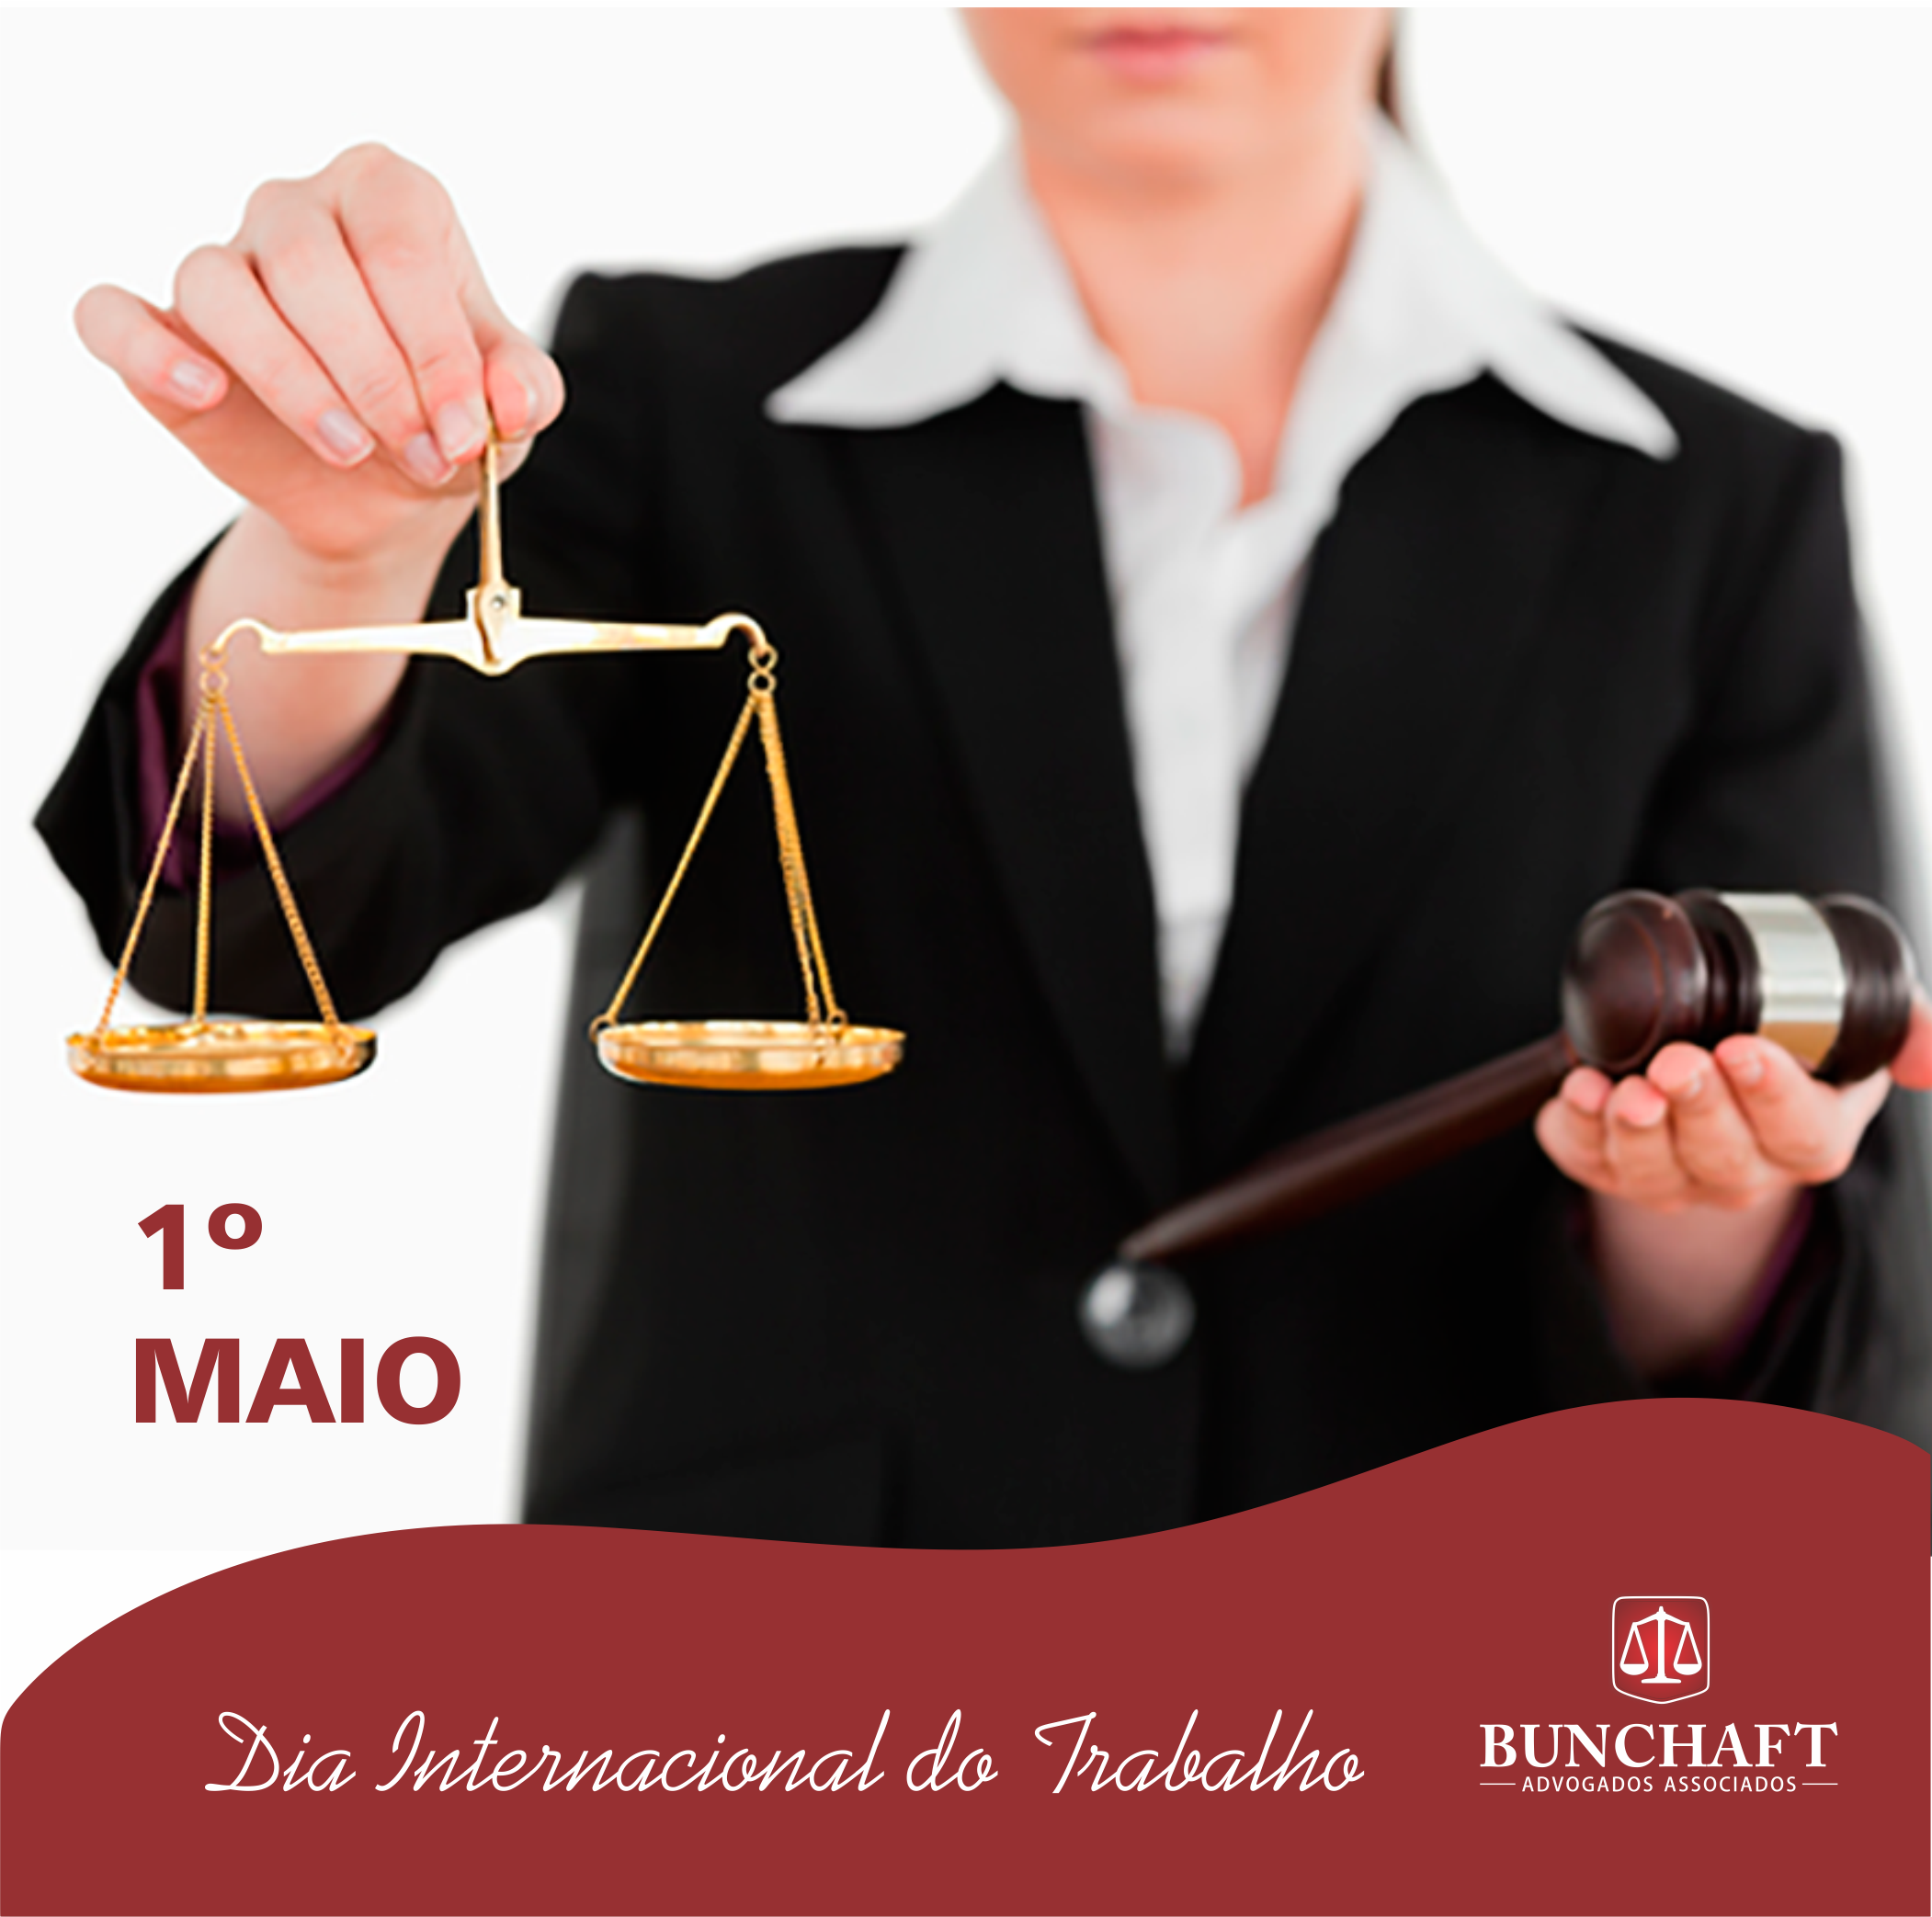 dia-do-trabalho-bunchaft-advogados-associados-ilheus-direito-escritório-advocacia-advogado-trabalhista-civel-previdenciário-previdencia-consumidor-justiça